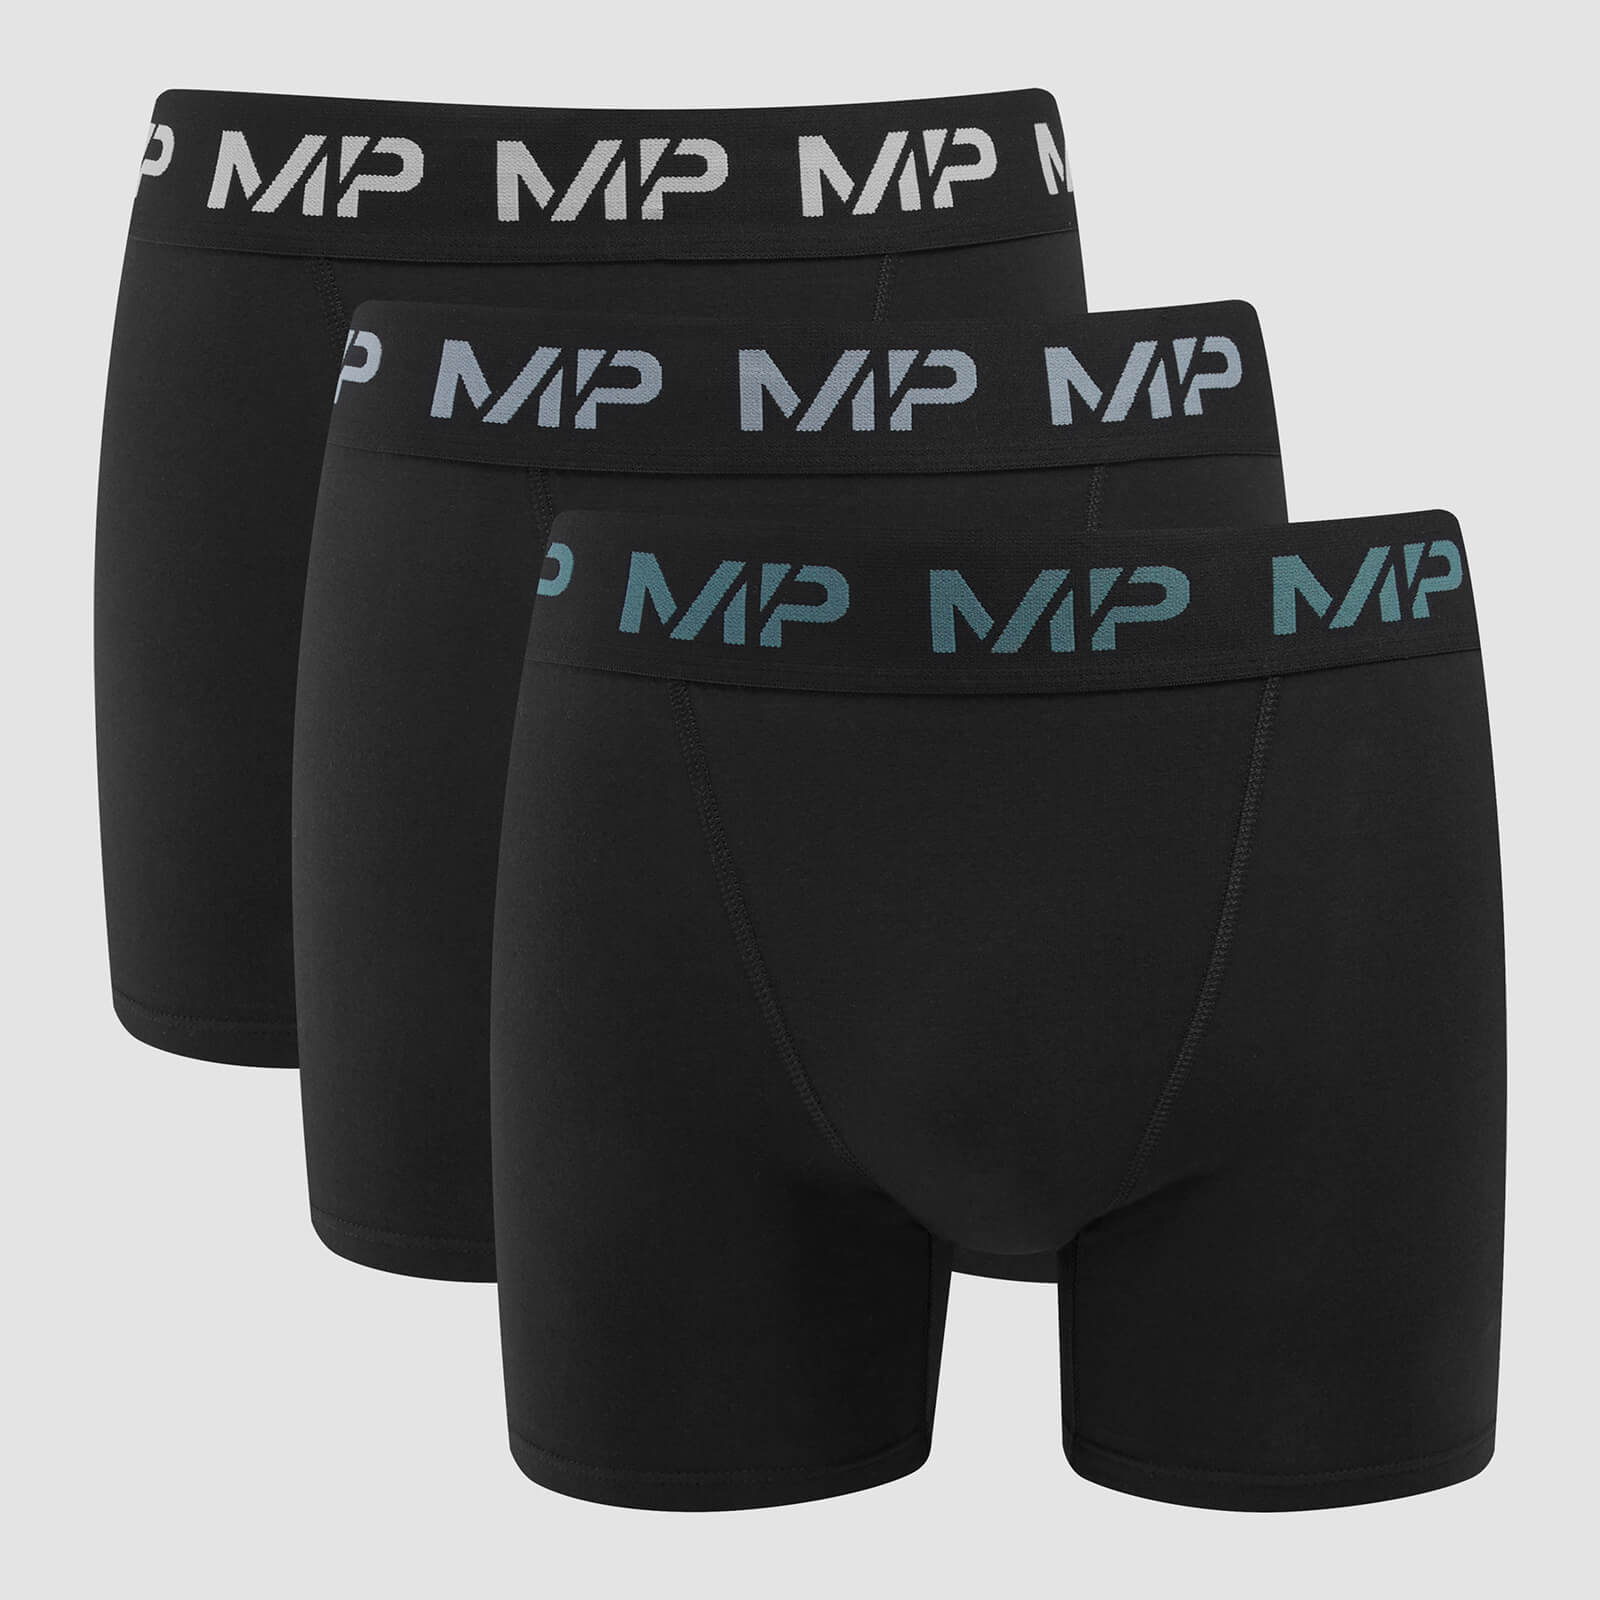 Boxers à logo coloré MP pour hommes (lot de 3) – Noir/Bleu fumé/Bleu galet/Gris foncé